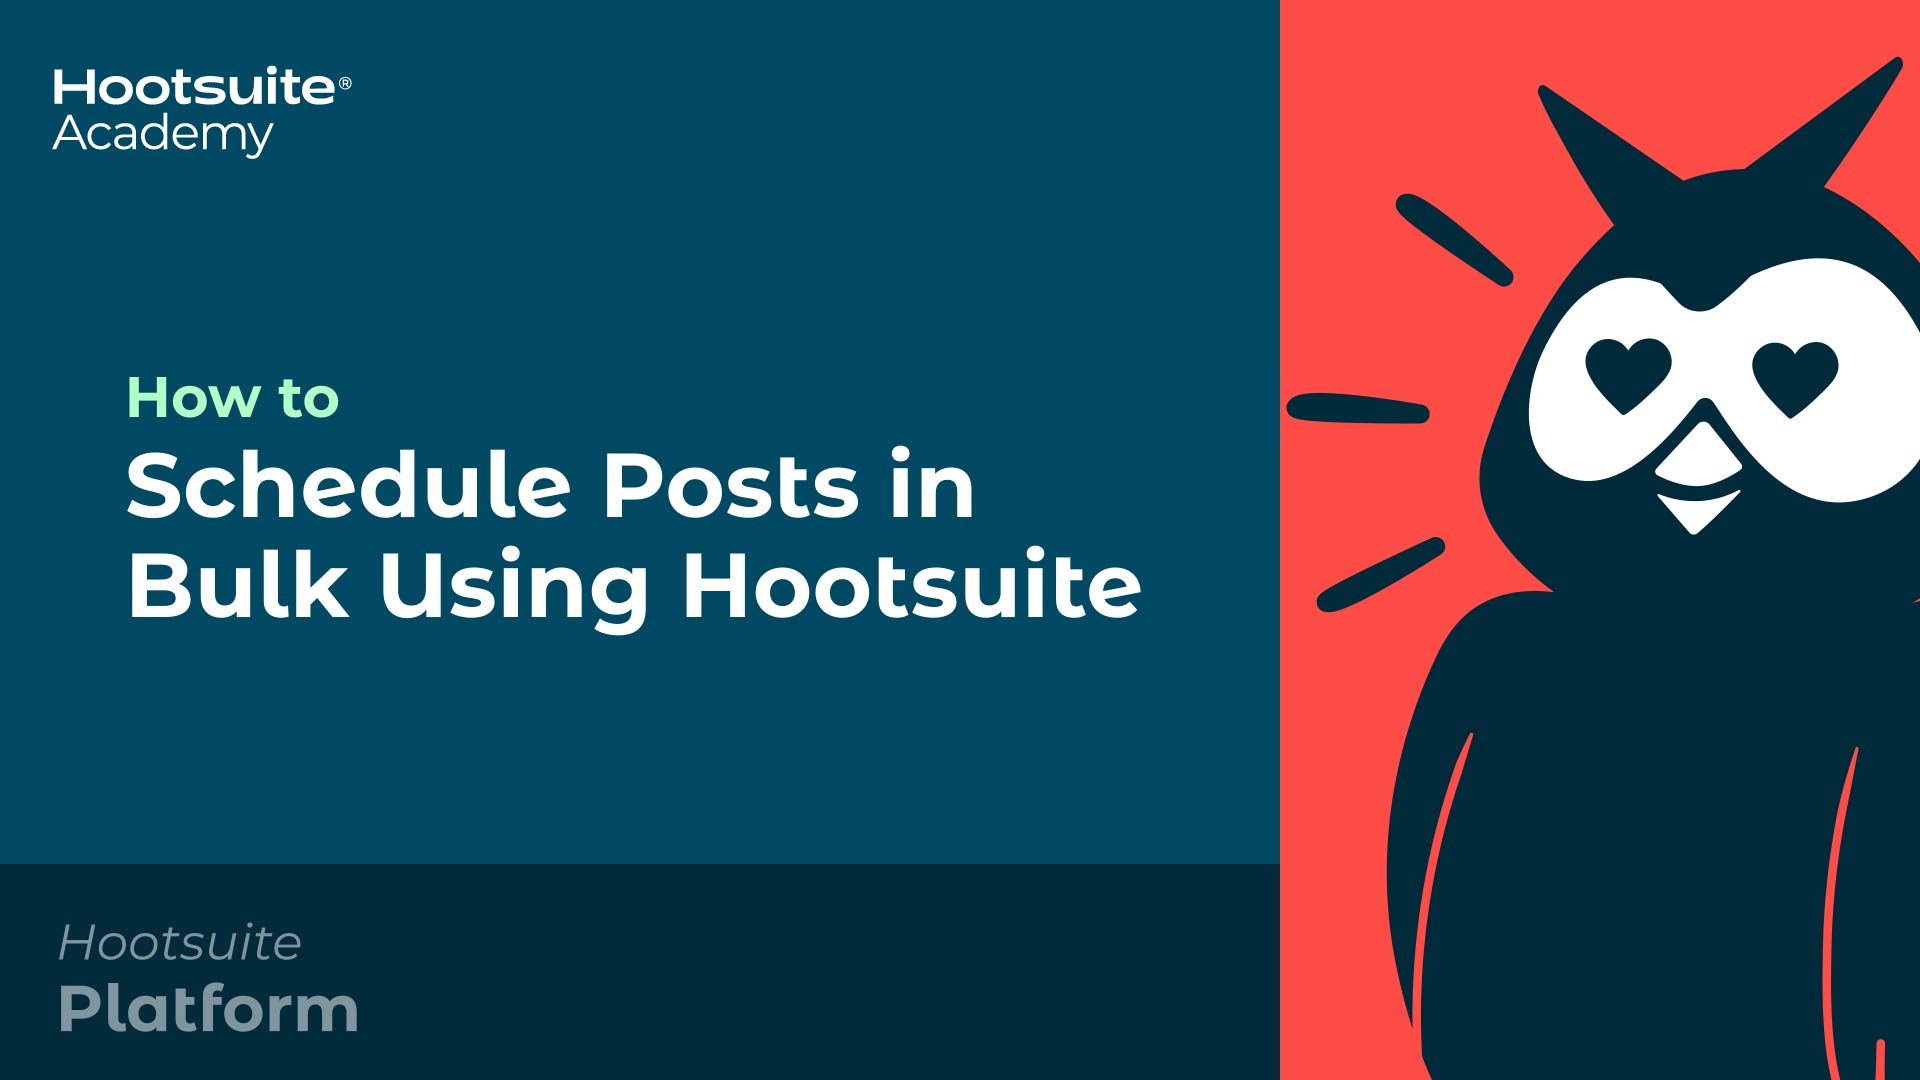 Vídeo: Como agendar postagens em massa usando a Hootsuite.